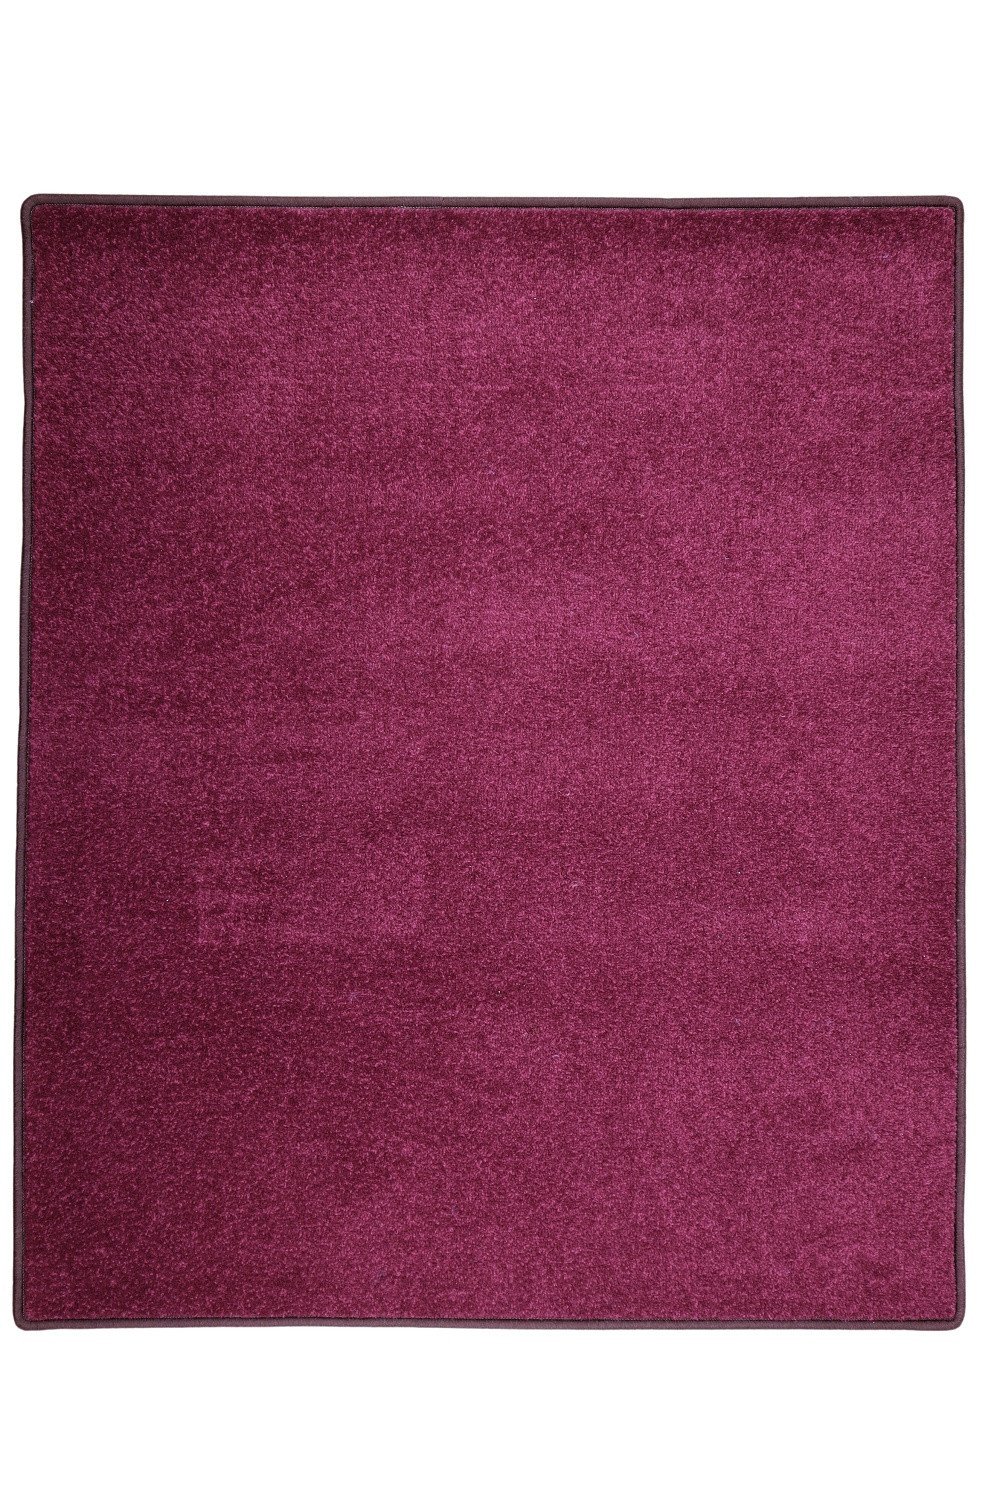 Kusový koberec Eton fialový 48 - 57x120 cm Betap koberce